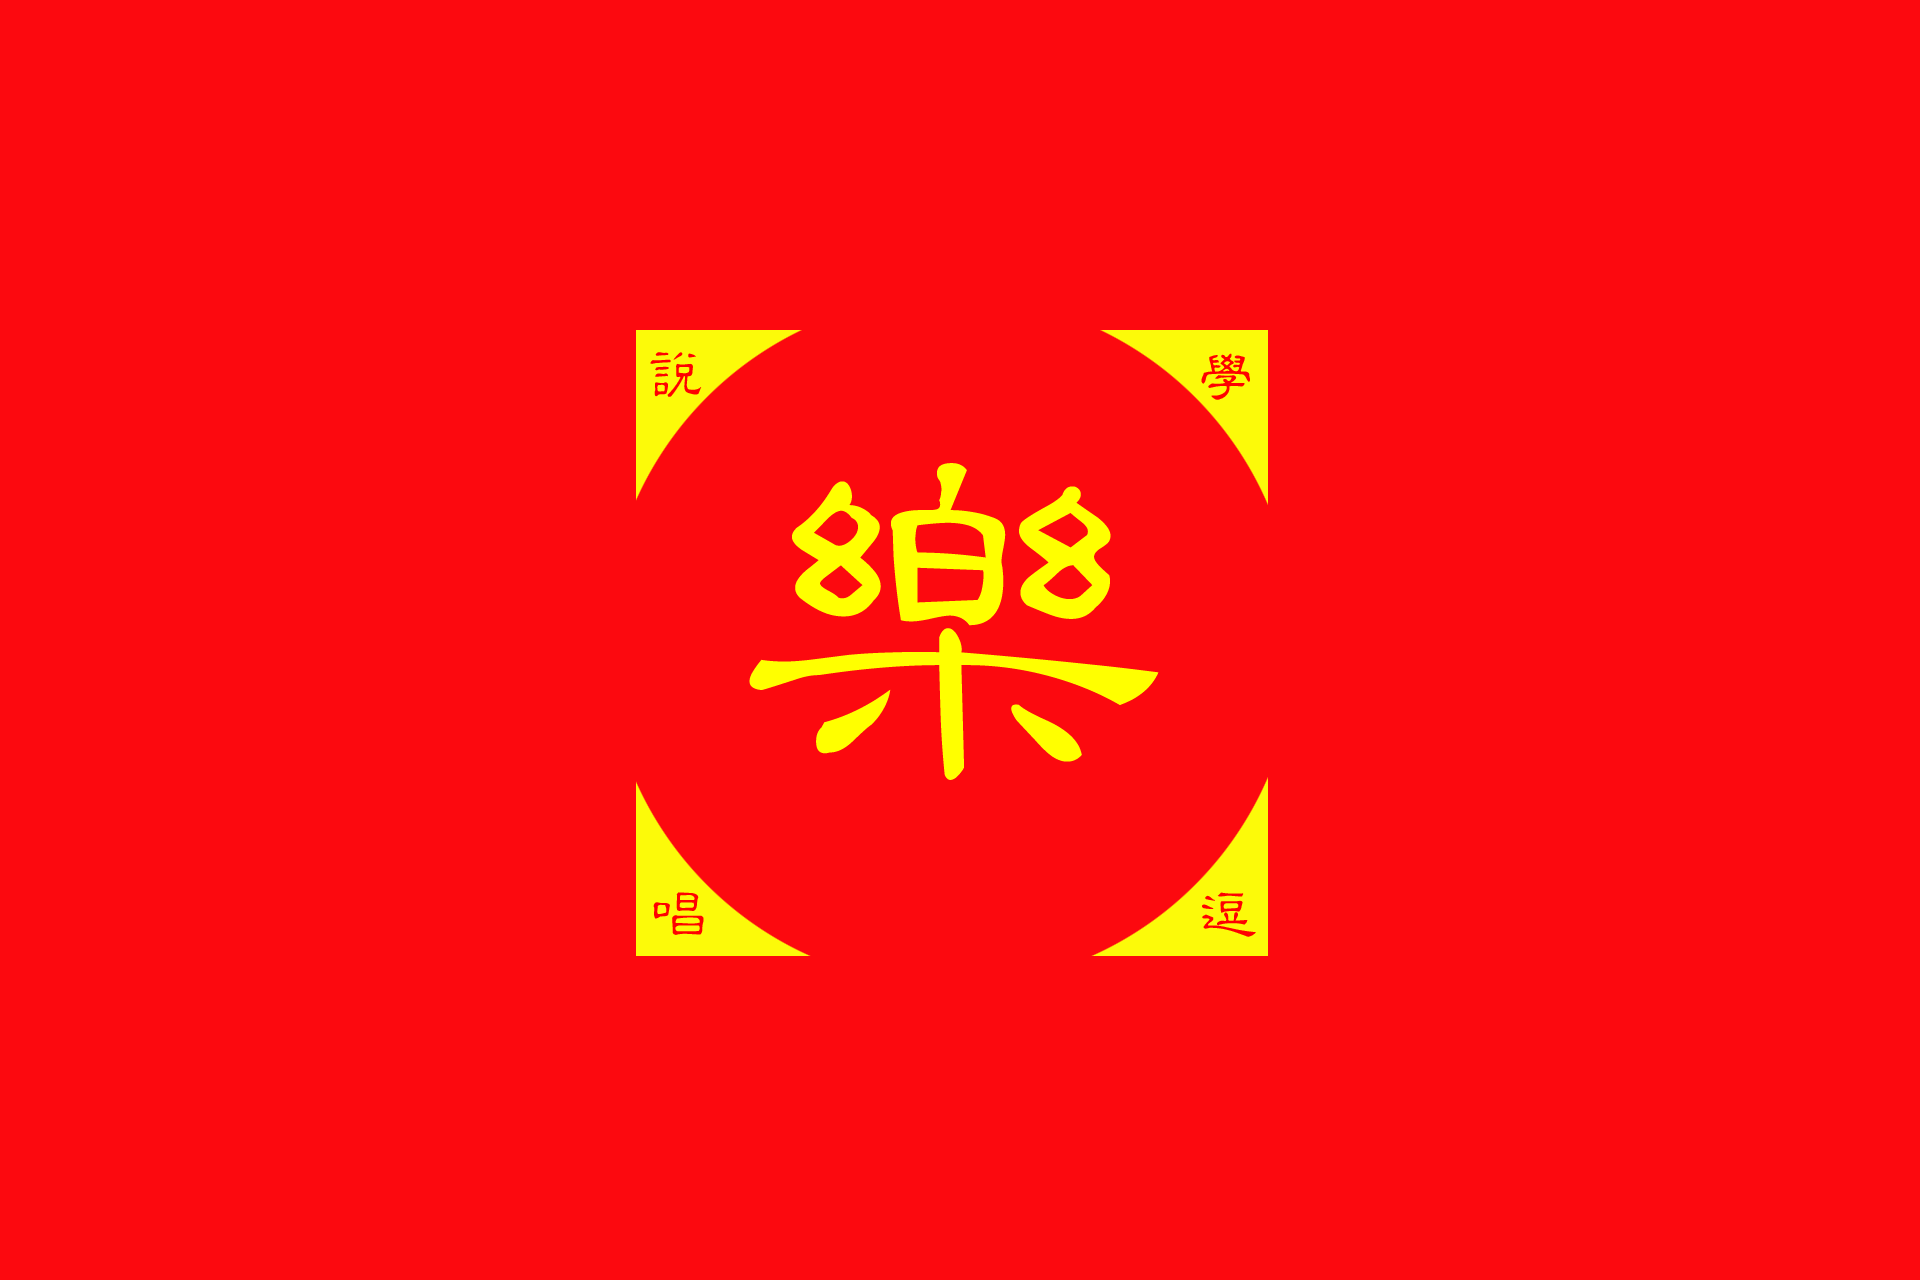 桂樂山相聲協會會旗